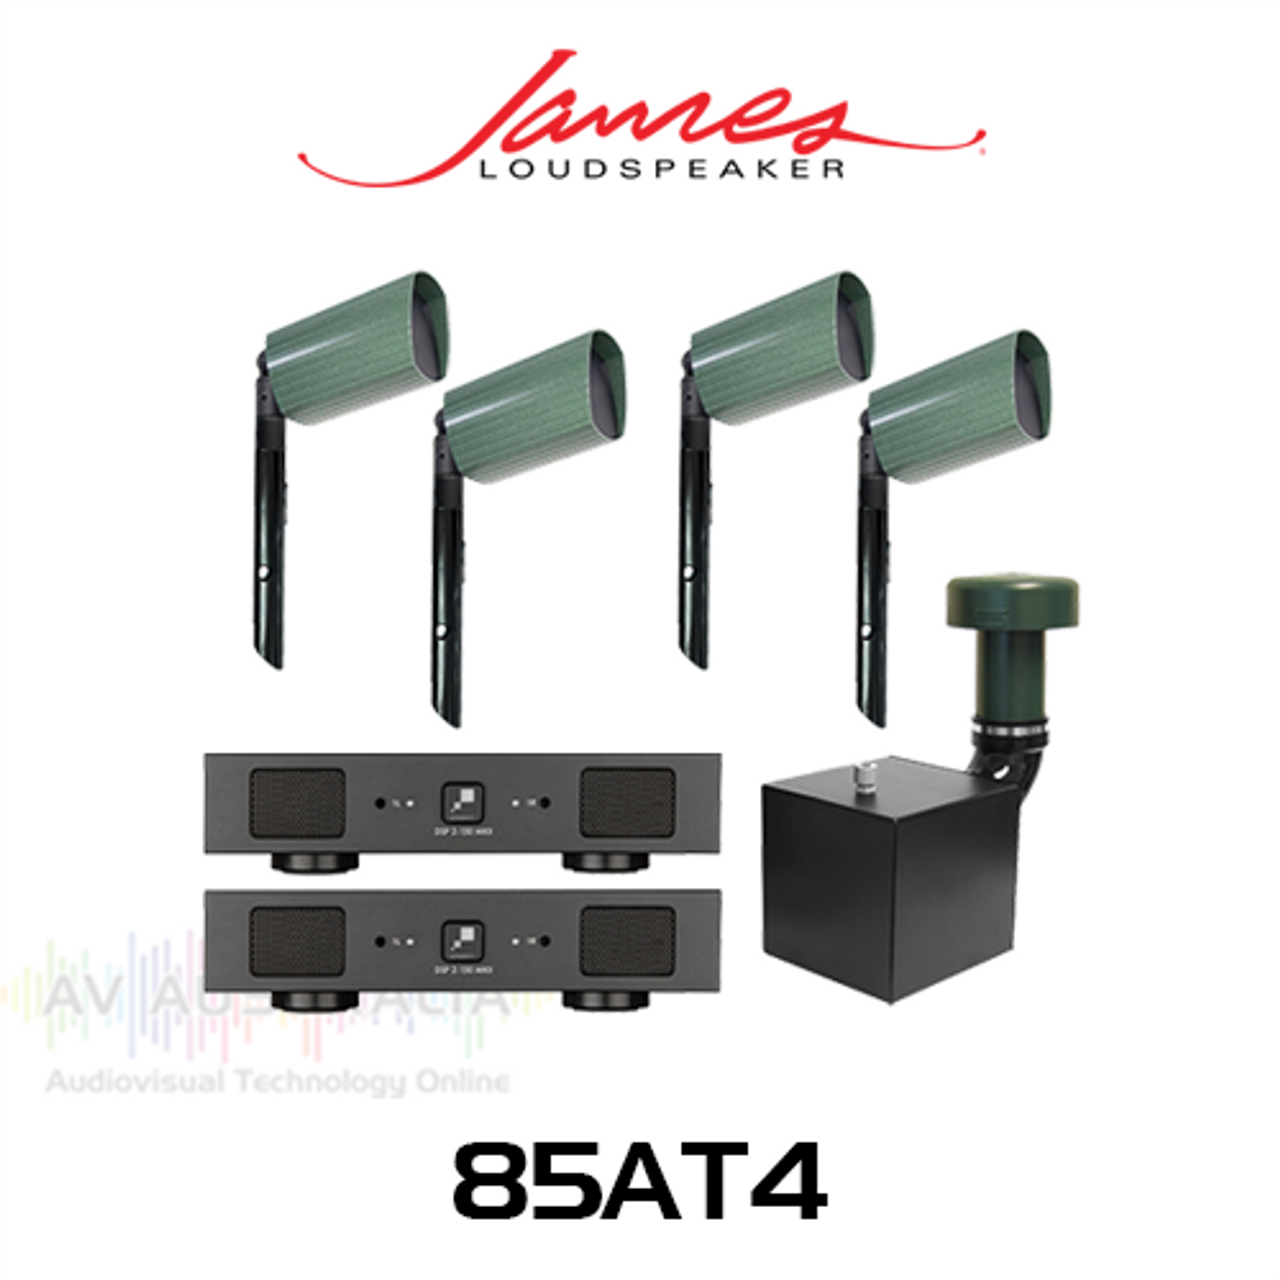 James Loudspeaker 85AT4 4" Landscape Satellite Speaker Pack with 8" Subwoofer